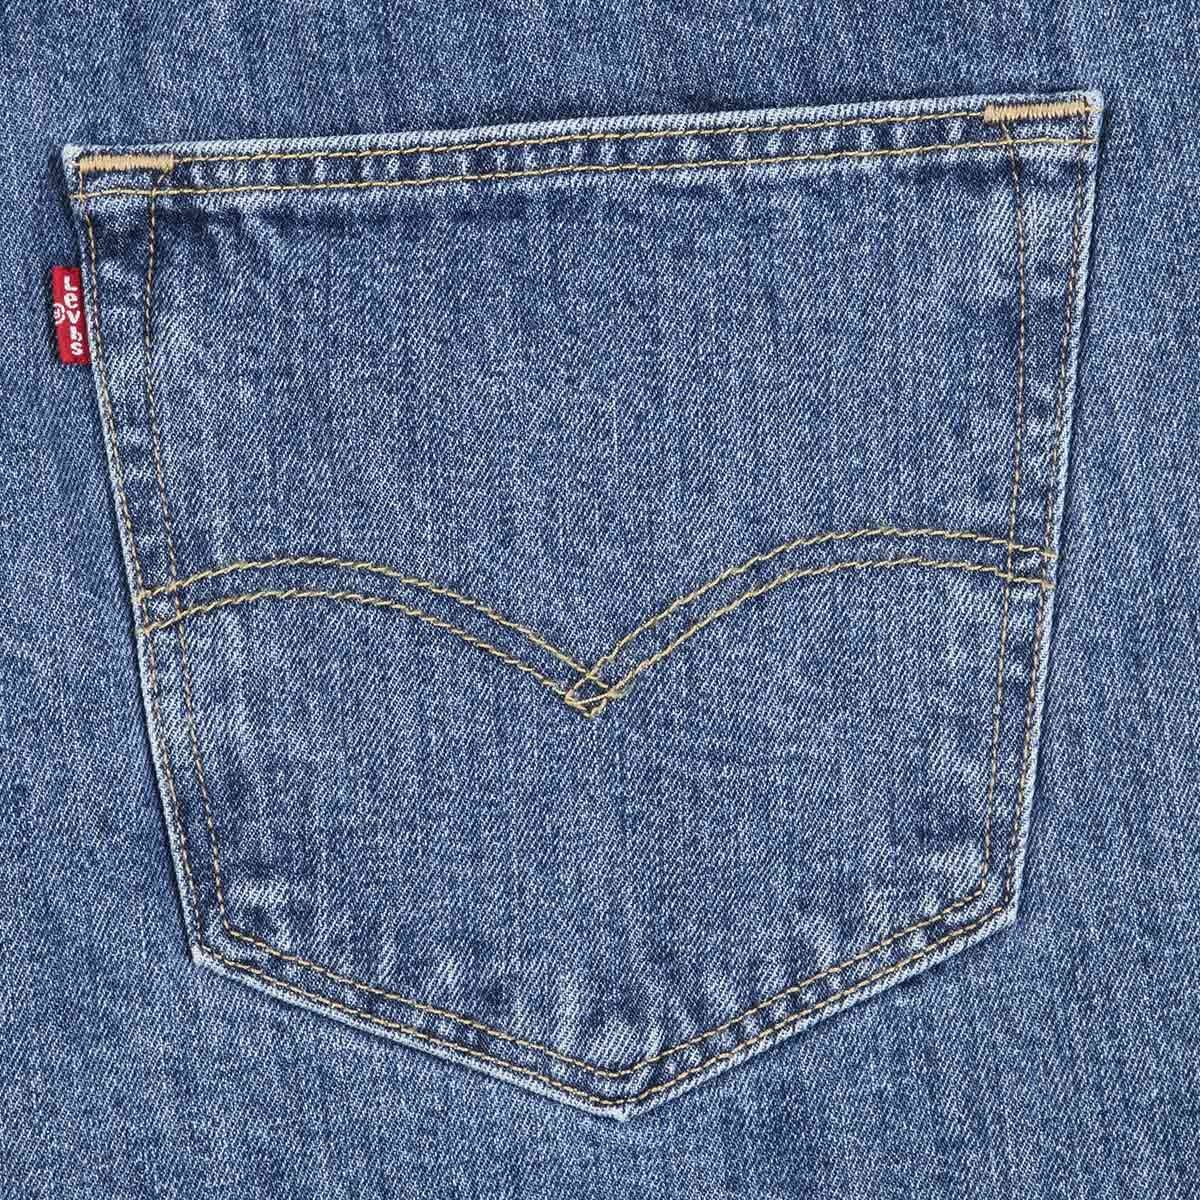 Jeans 501 Button Fly Levi's Talla Plus para Hombre